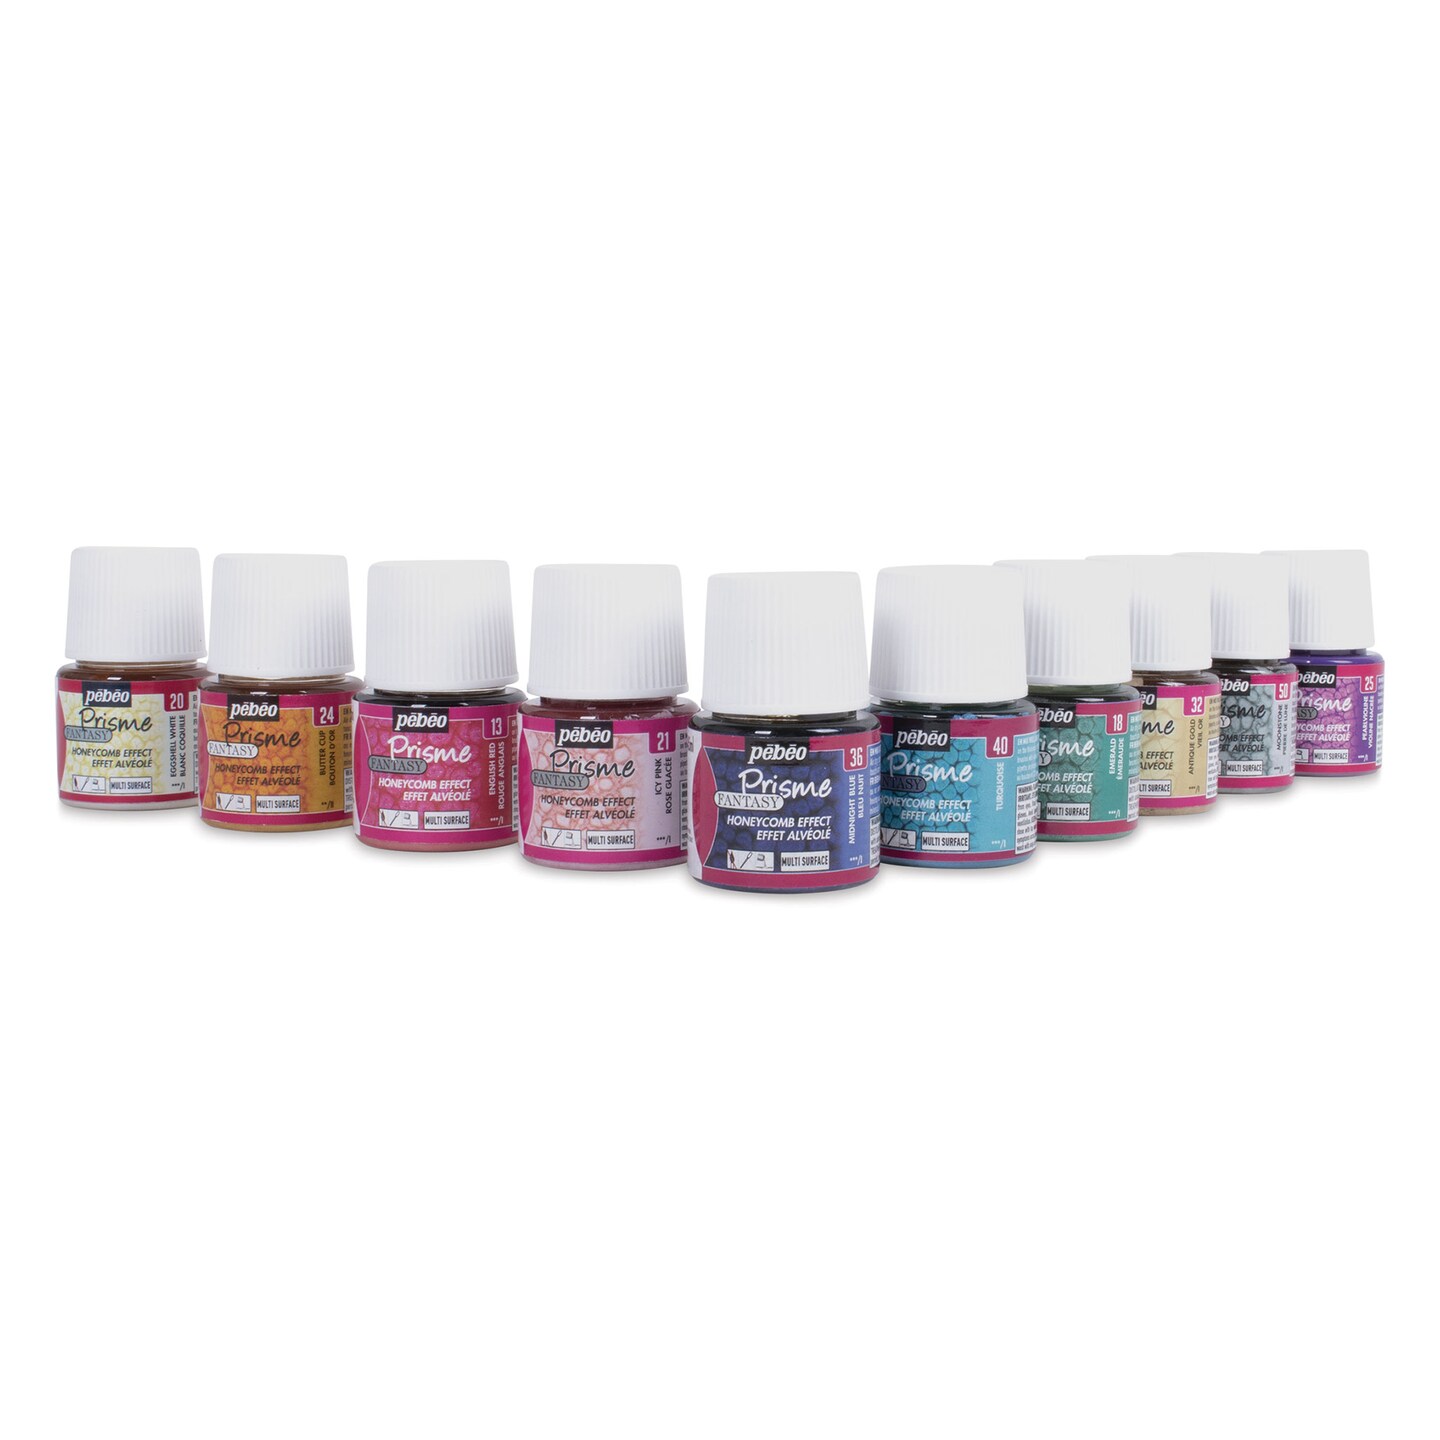 Pebeo Fantasy Prisme Paints - Opalescent Colors, 45 ml bottles, Set of 10